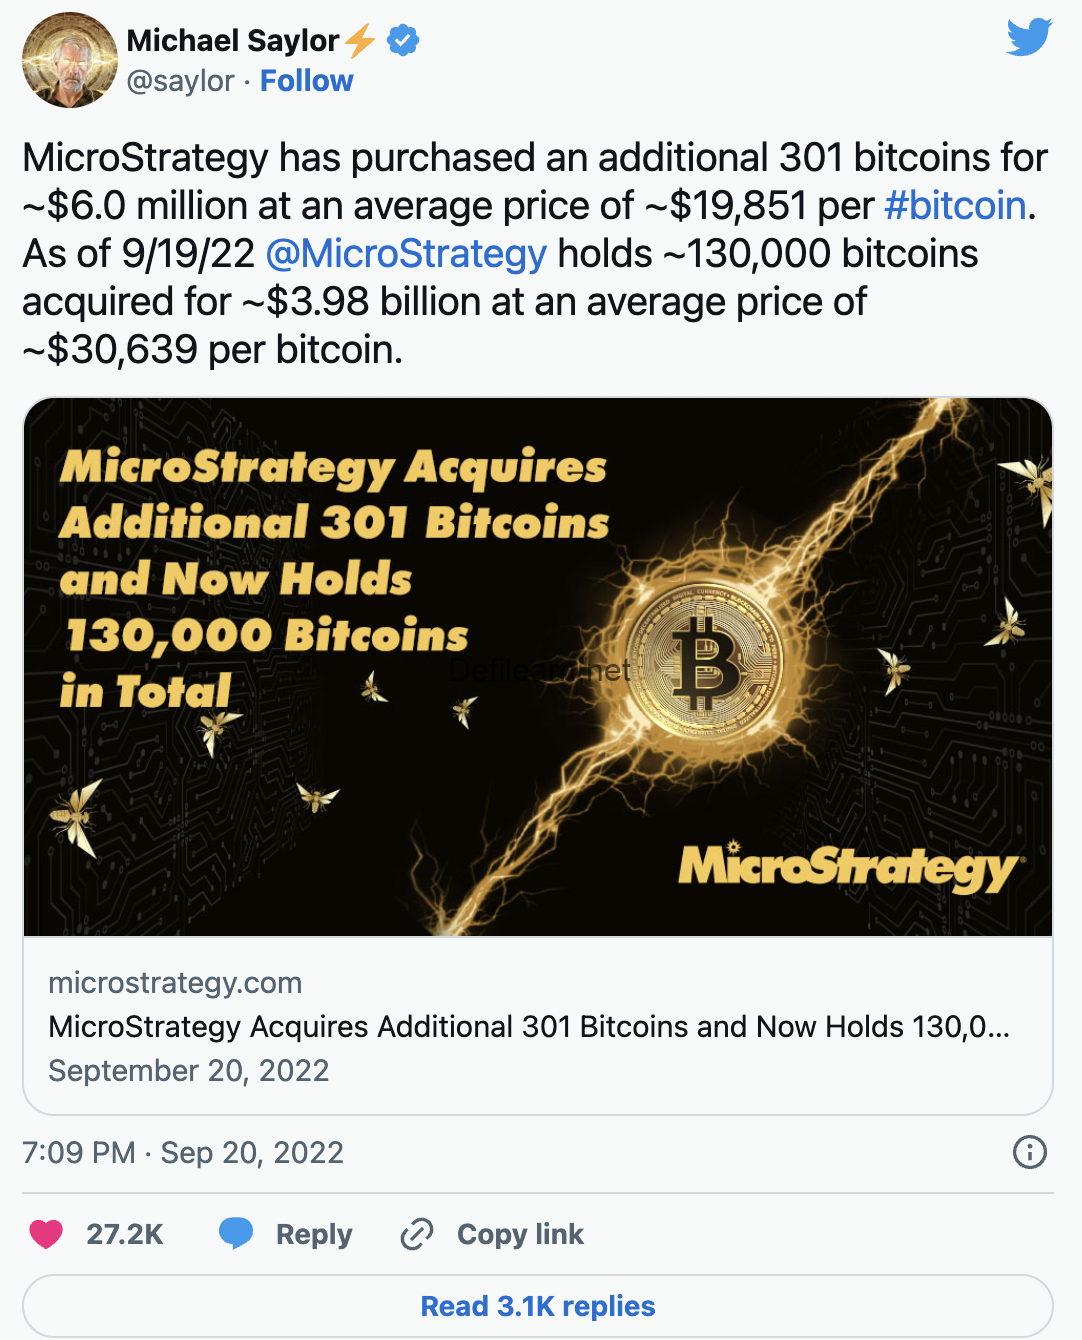 Giá mua Bitcoin trung bình của quỹ MicroStrategy